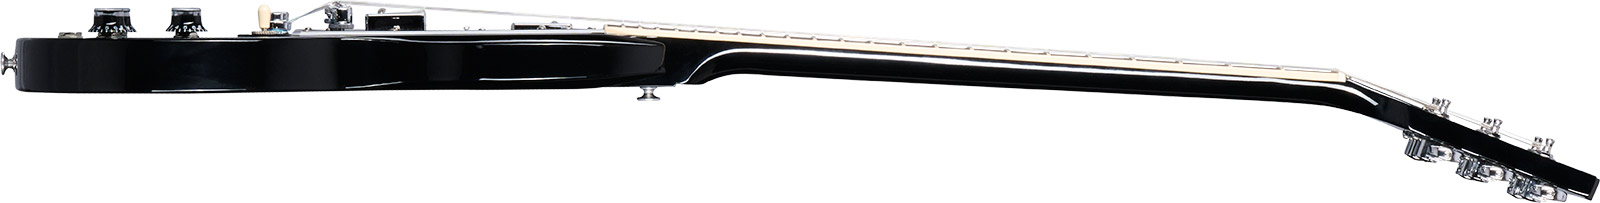 Gibson Sg Standard Custom Color 2h Ht Rw - Pelham Blue Burst - Guitarra eléctrica de doble corte - Variation 2